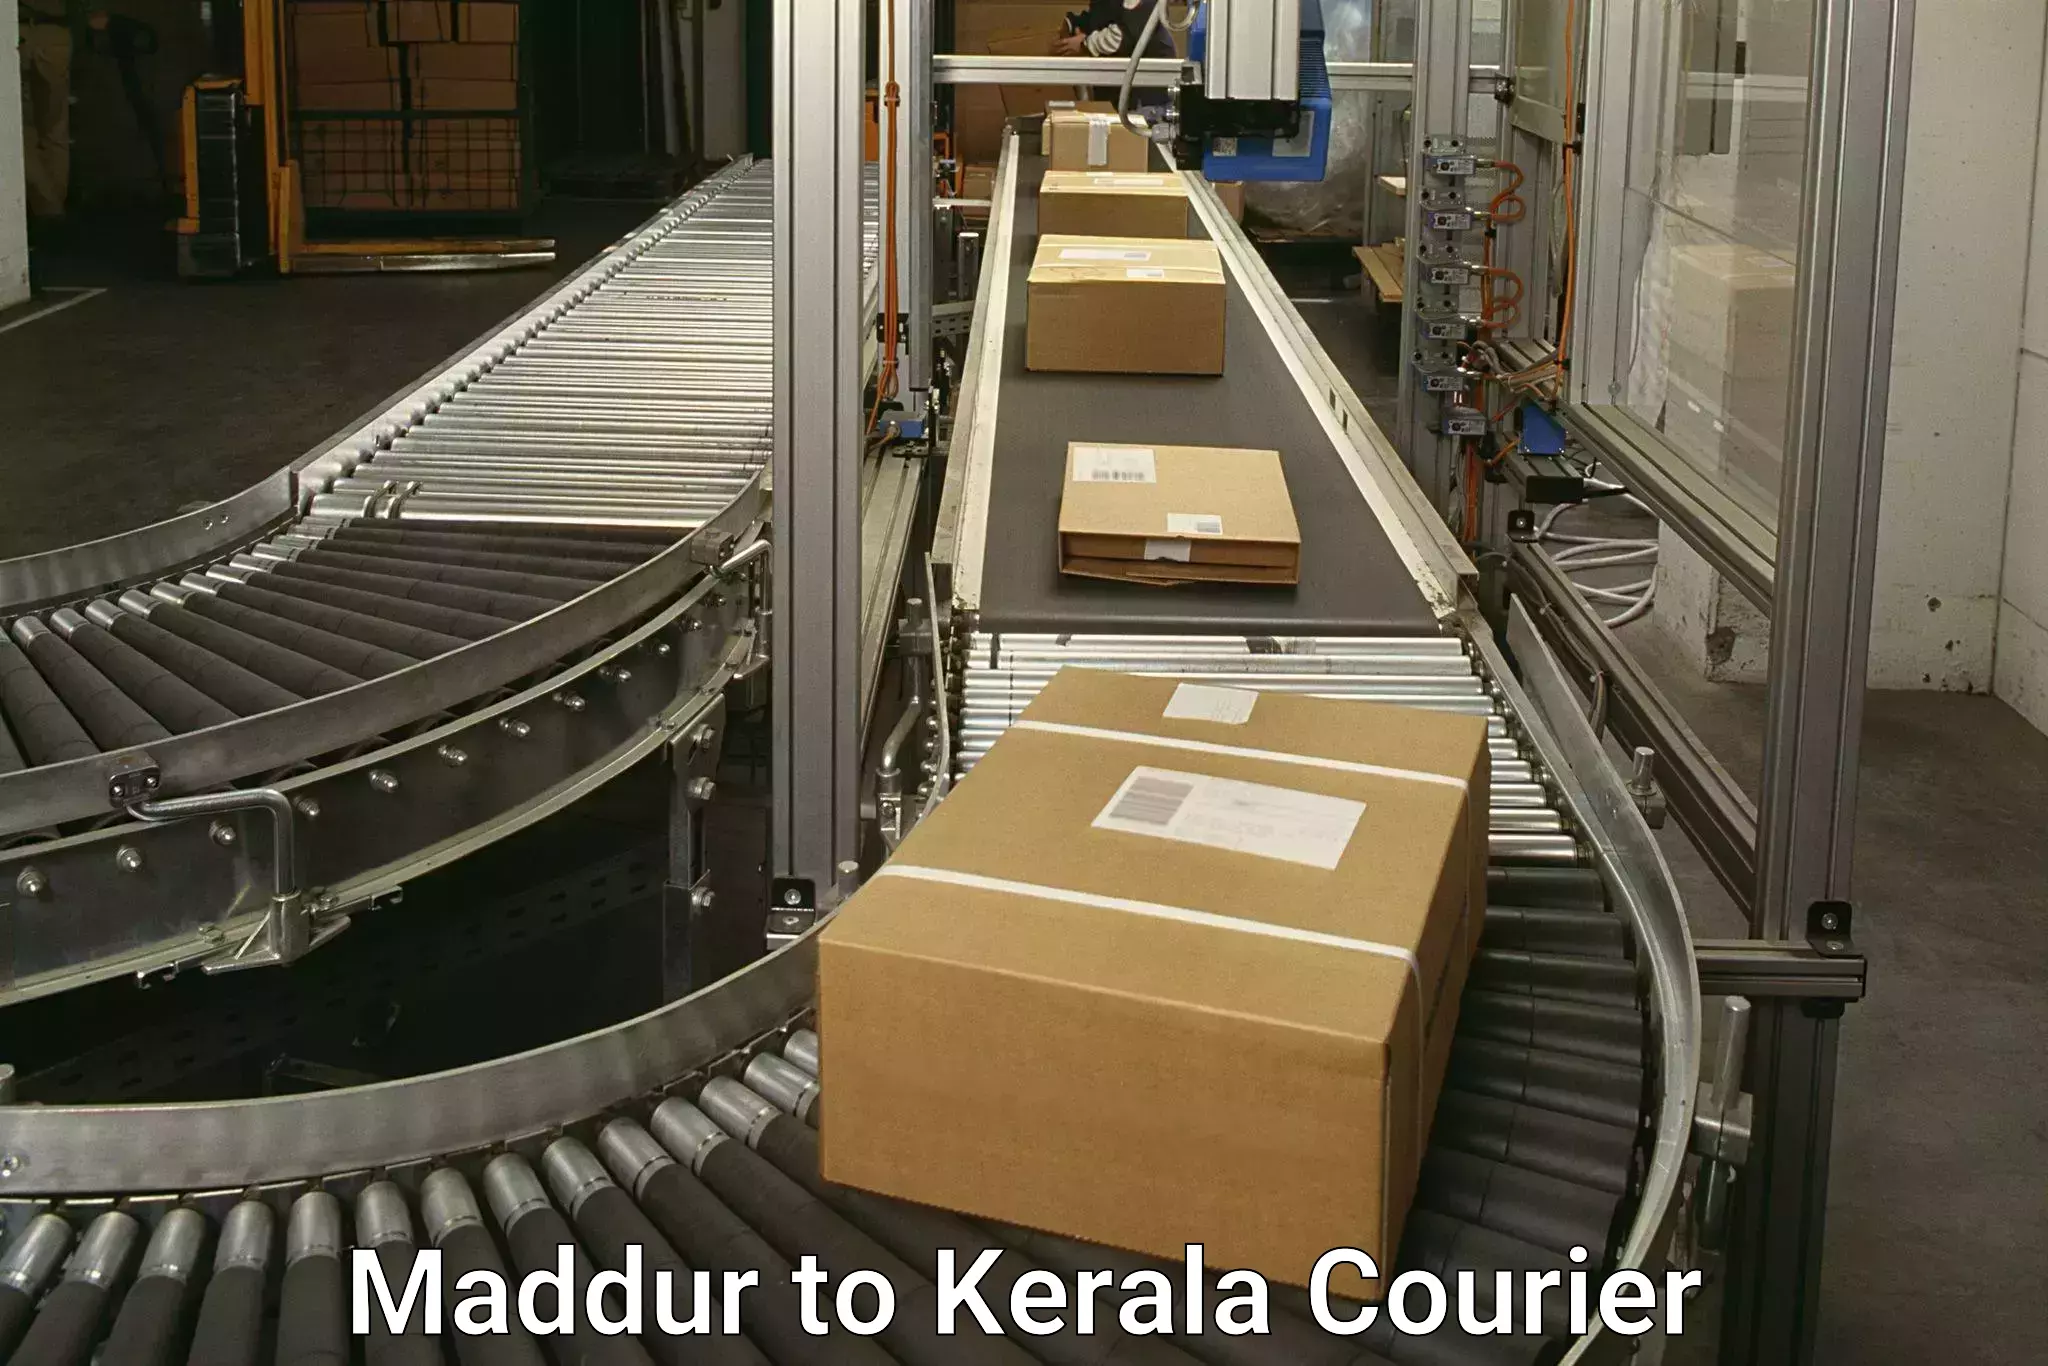 Express logistics Maddur to Kerala